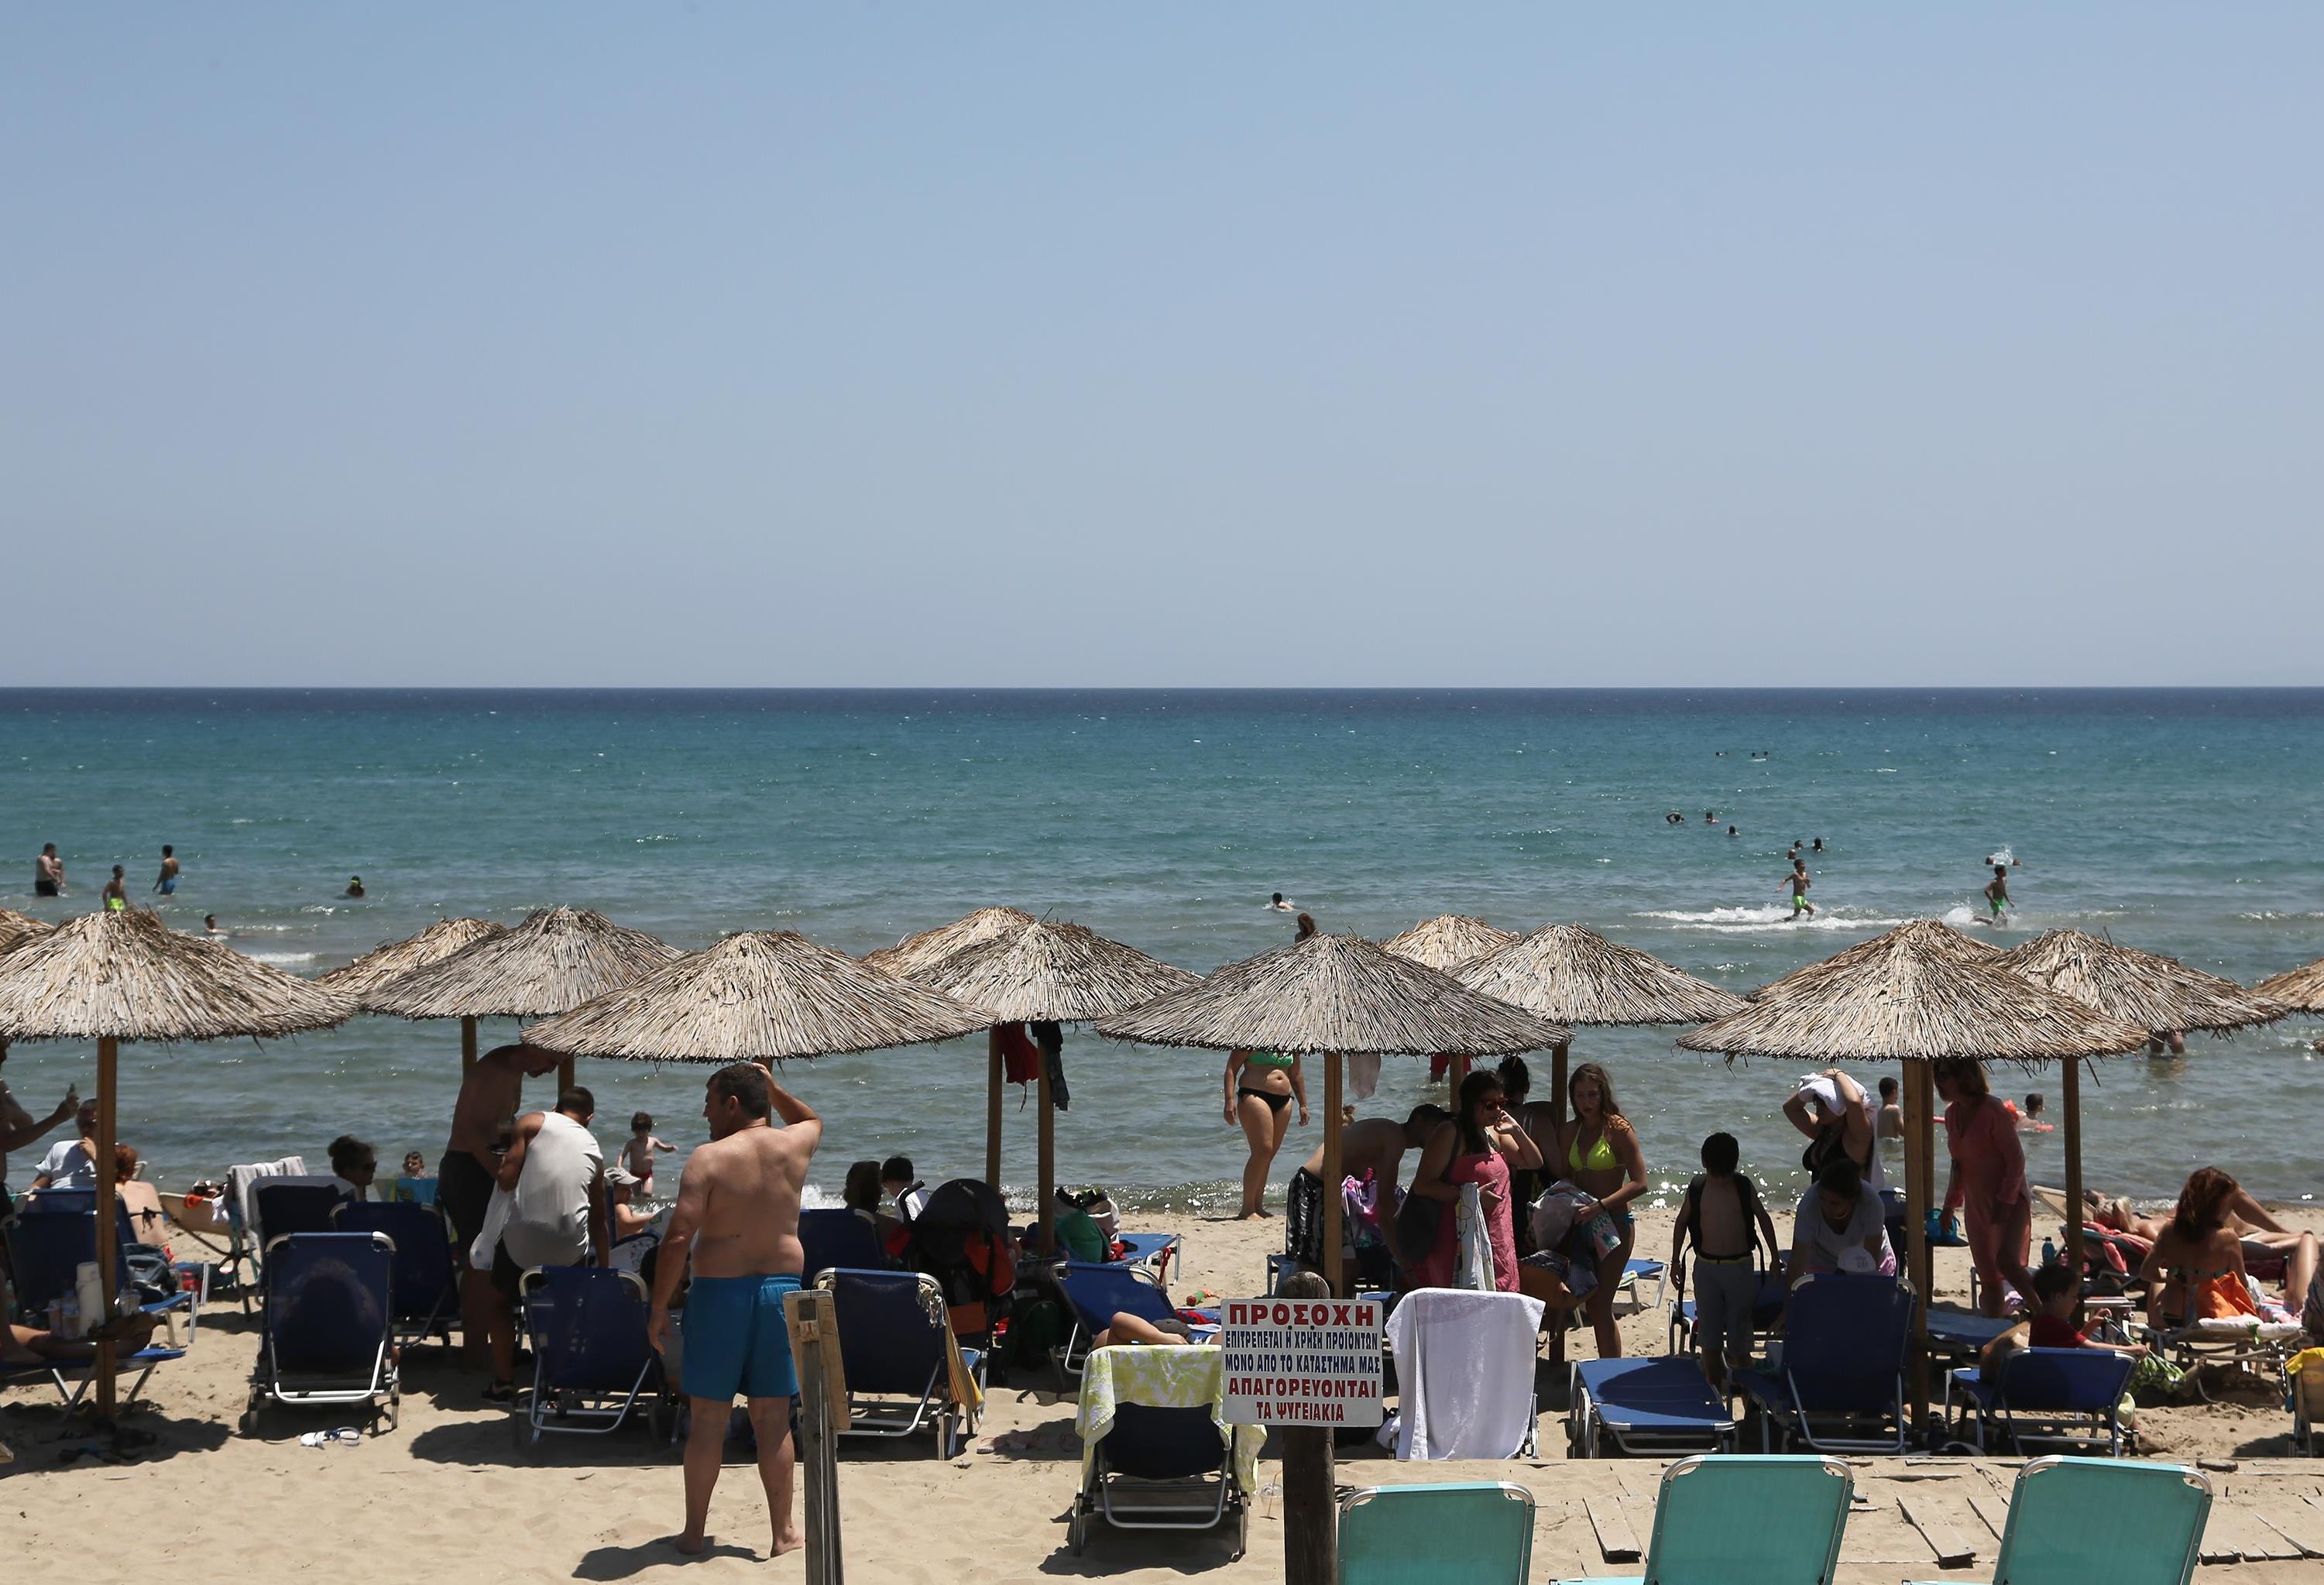 ΕΚΠΟΙΖΩ: Τα δικαιώματα των καταναλωτών στις οργανωμένες παραλίες